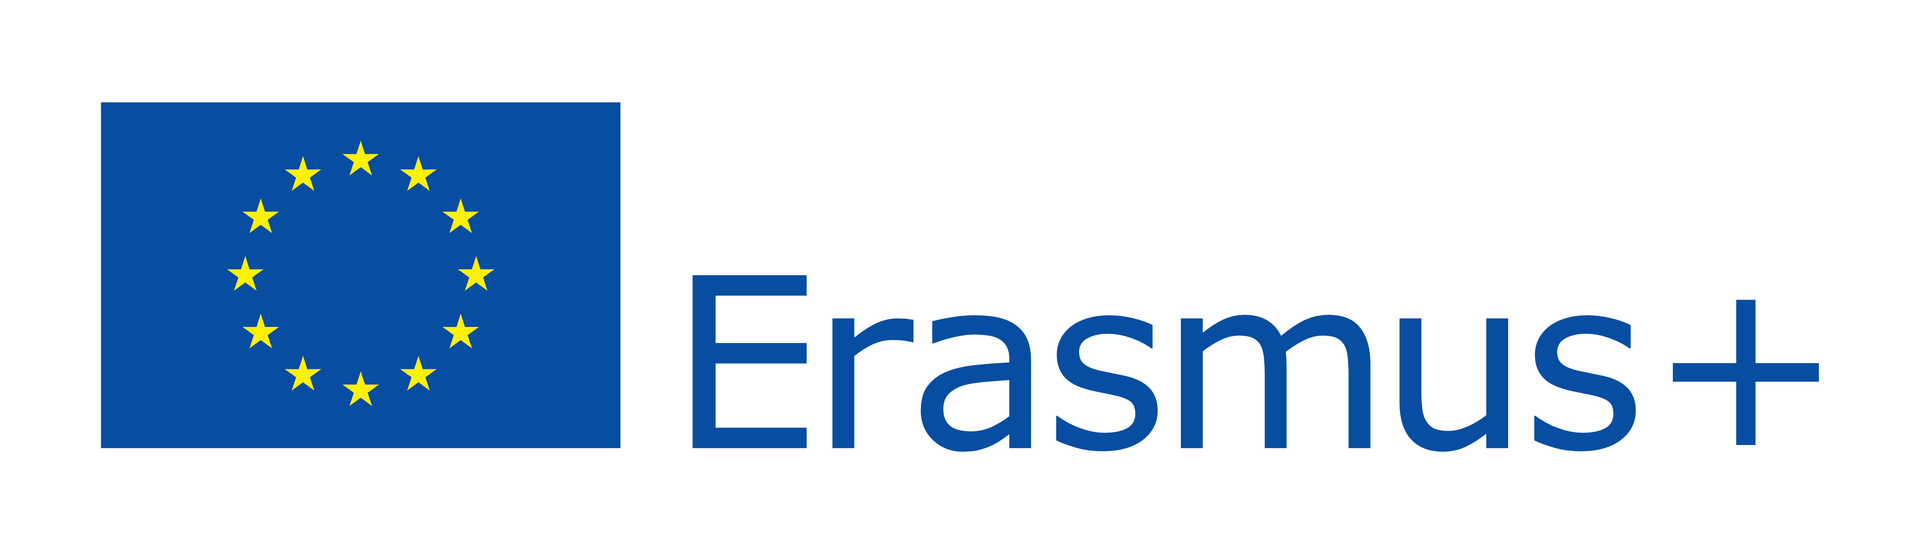 EU-flag_Erasmus+